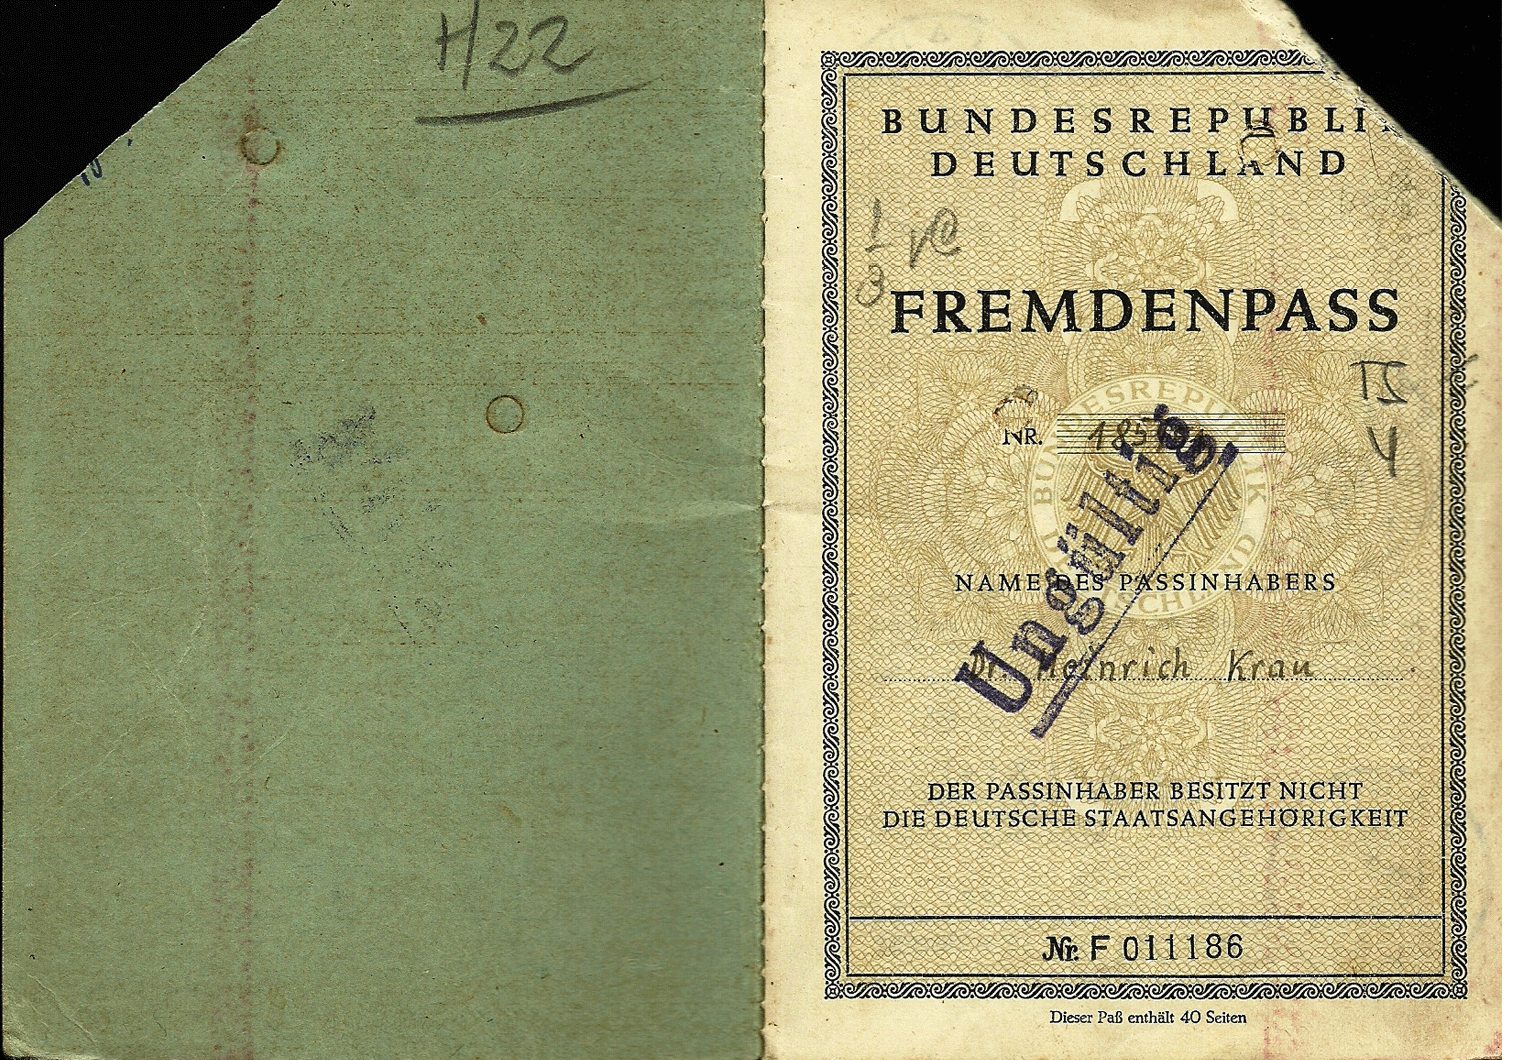 1951 early Fremdenpass